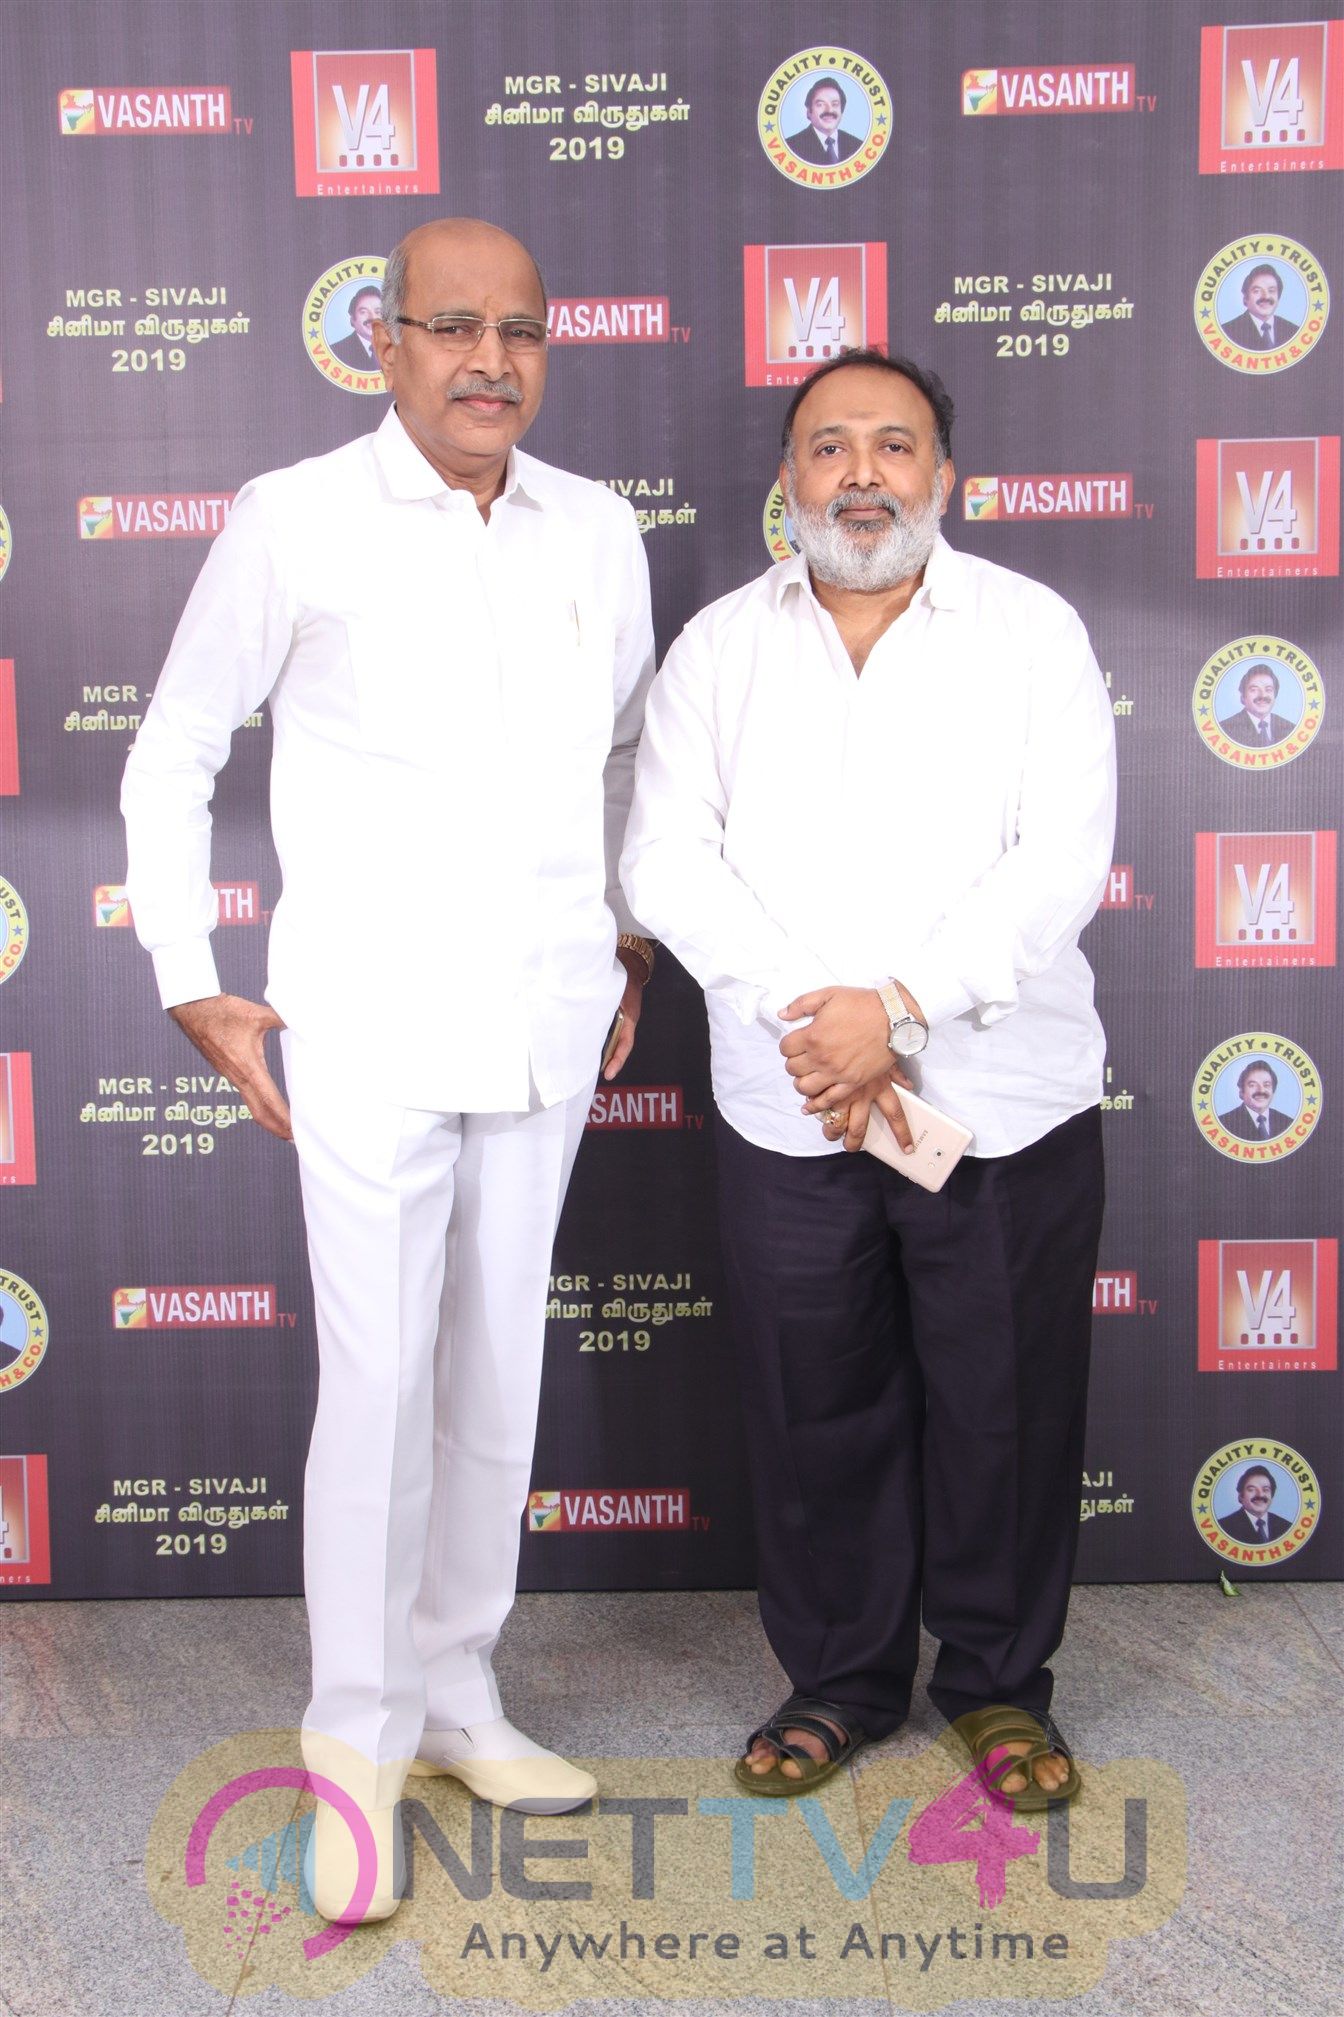 V4 MGR Sivaji Academy Awards 2018 Stills Tamil Gallery